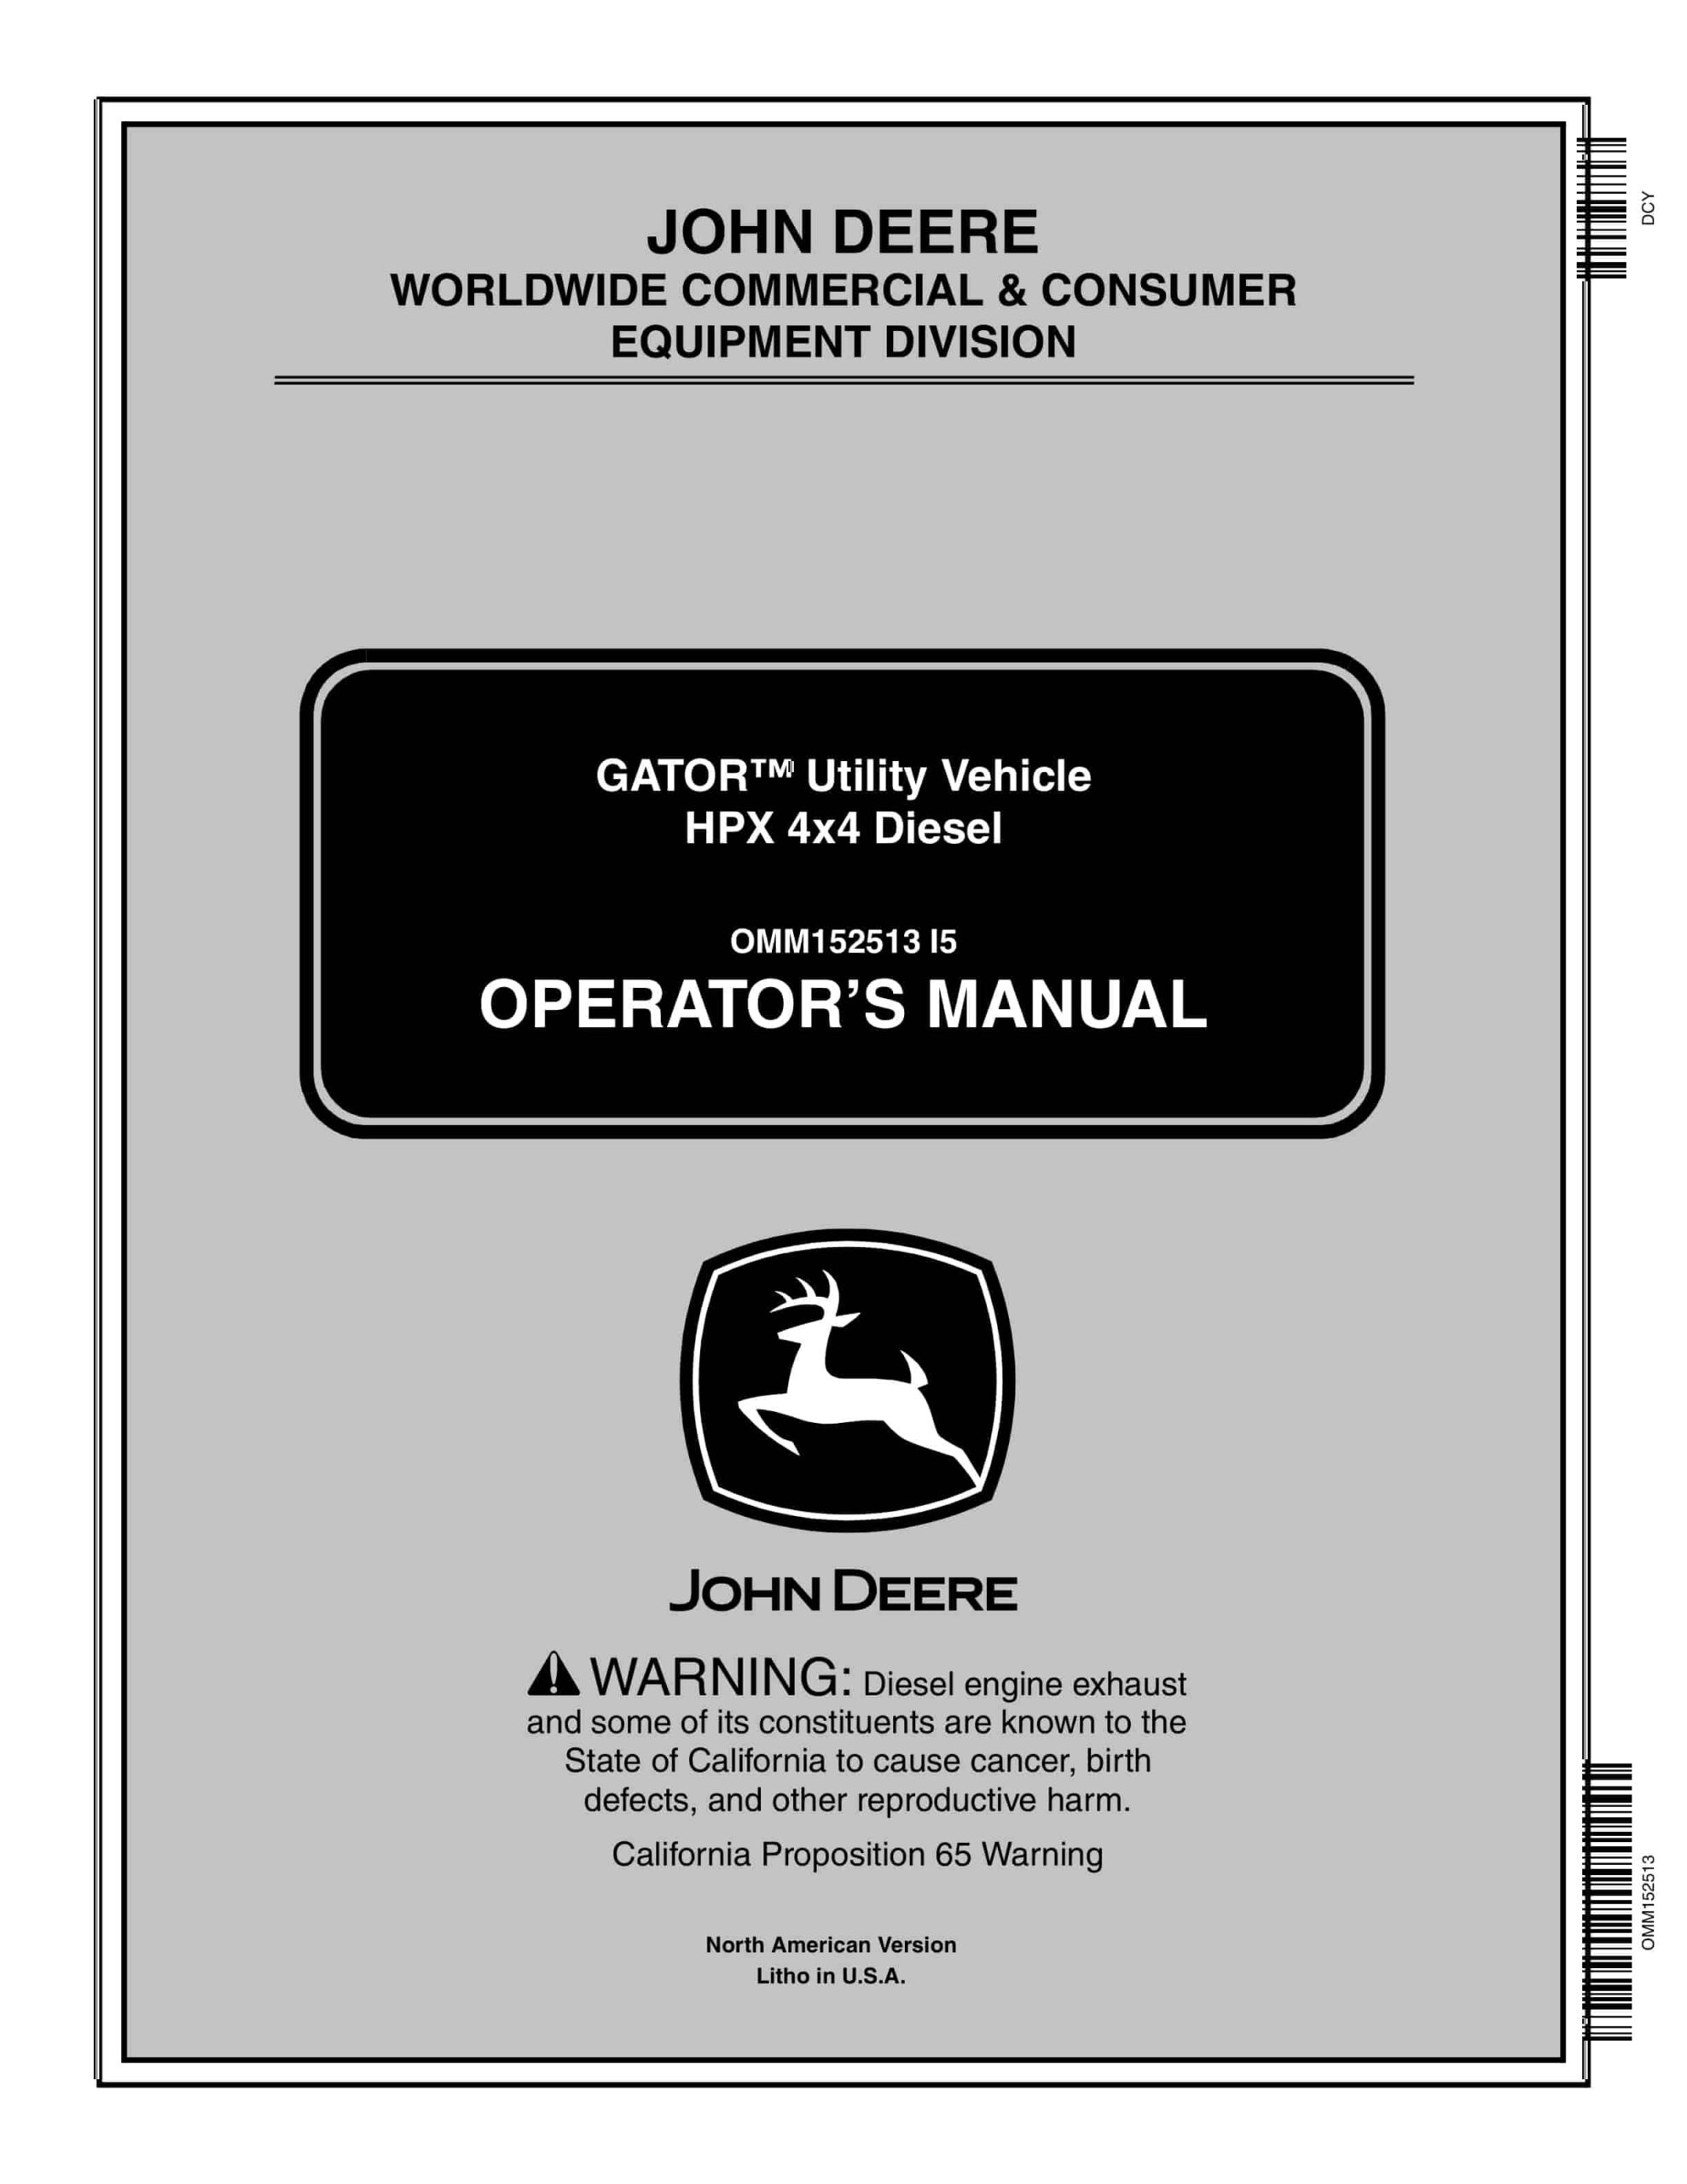 John Deere HPX 4×4 Diesel GATOR Utility Vehicles Operator Manual OMM152513-1